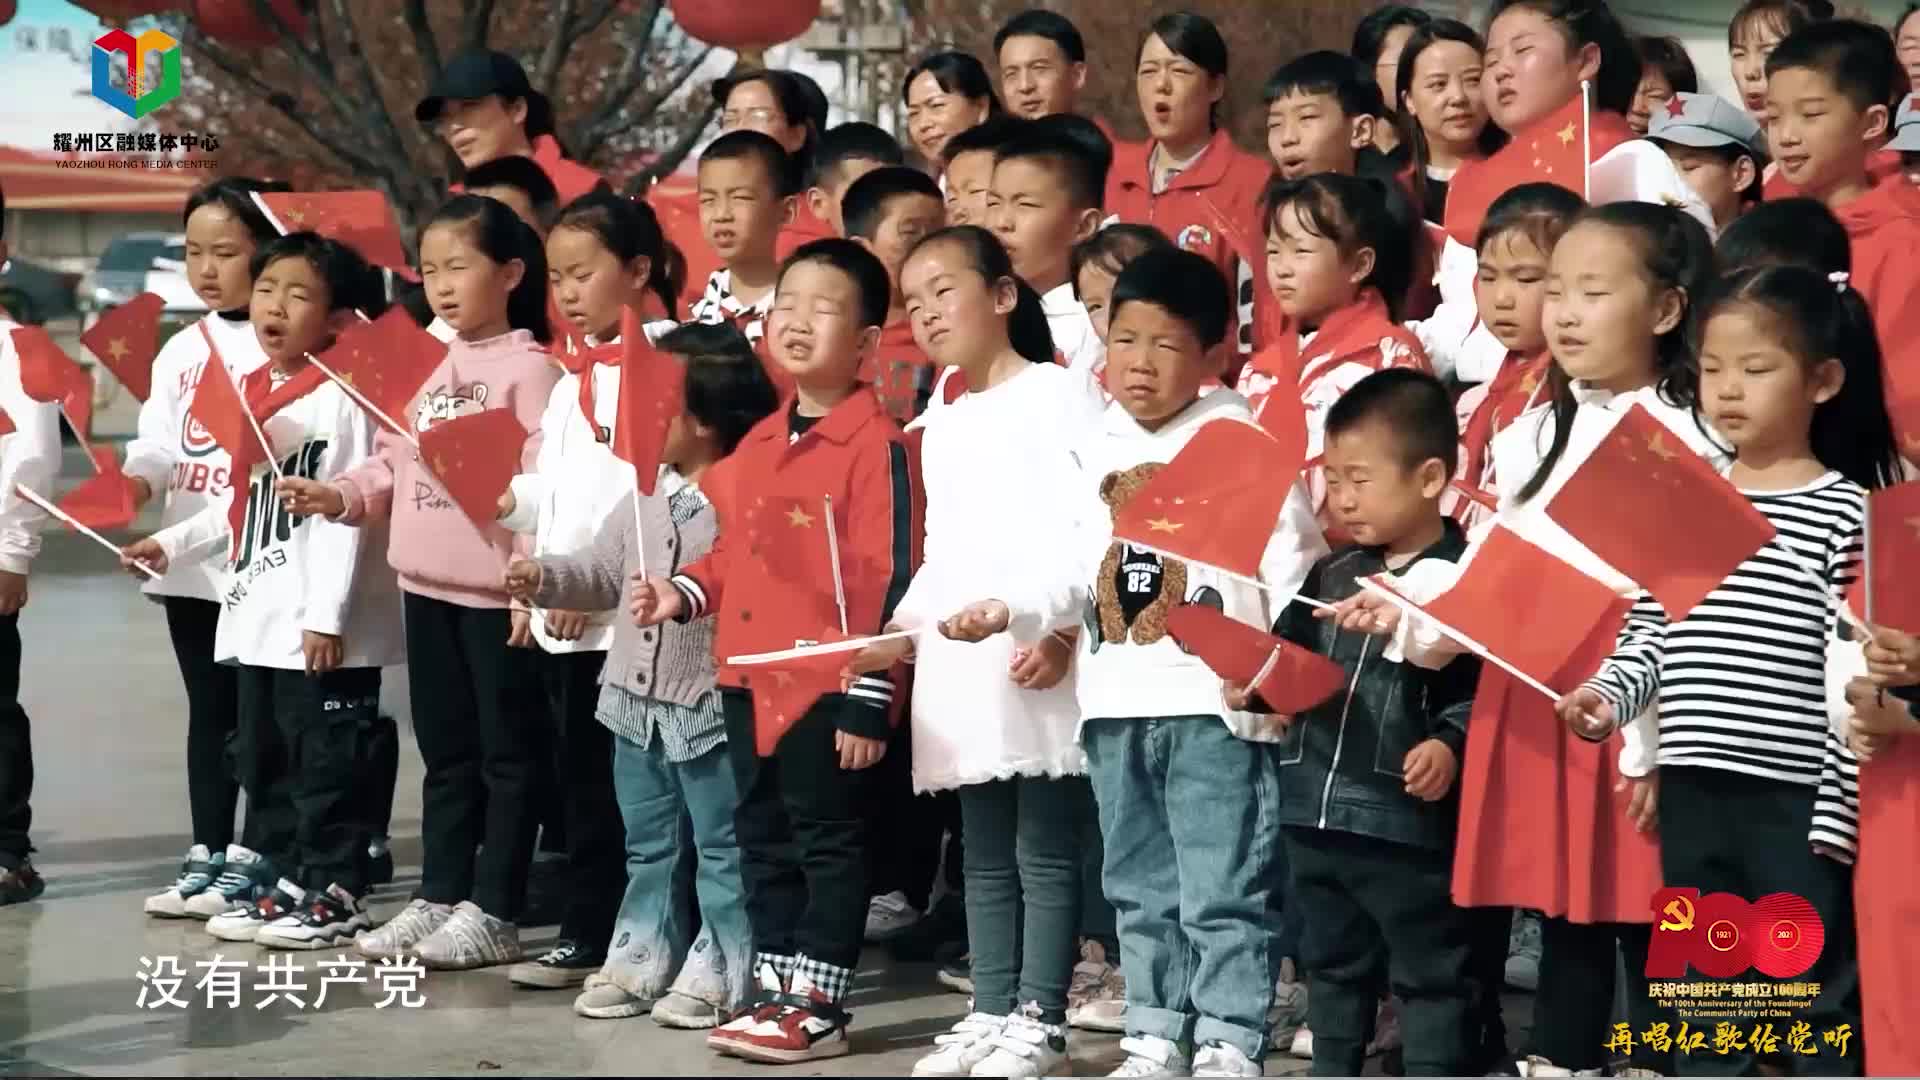 唱支红歌给党听|“百年奋斗 铸就辉煌”庆祝中国共产党成立100周年网络视听短视频大赛